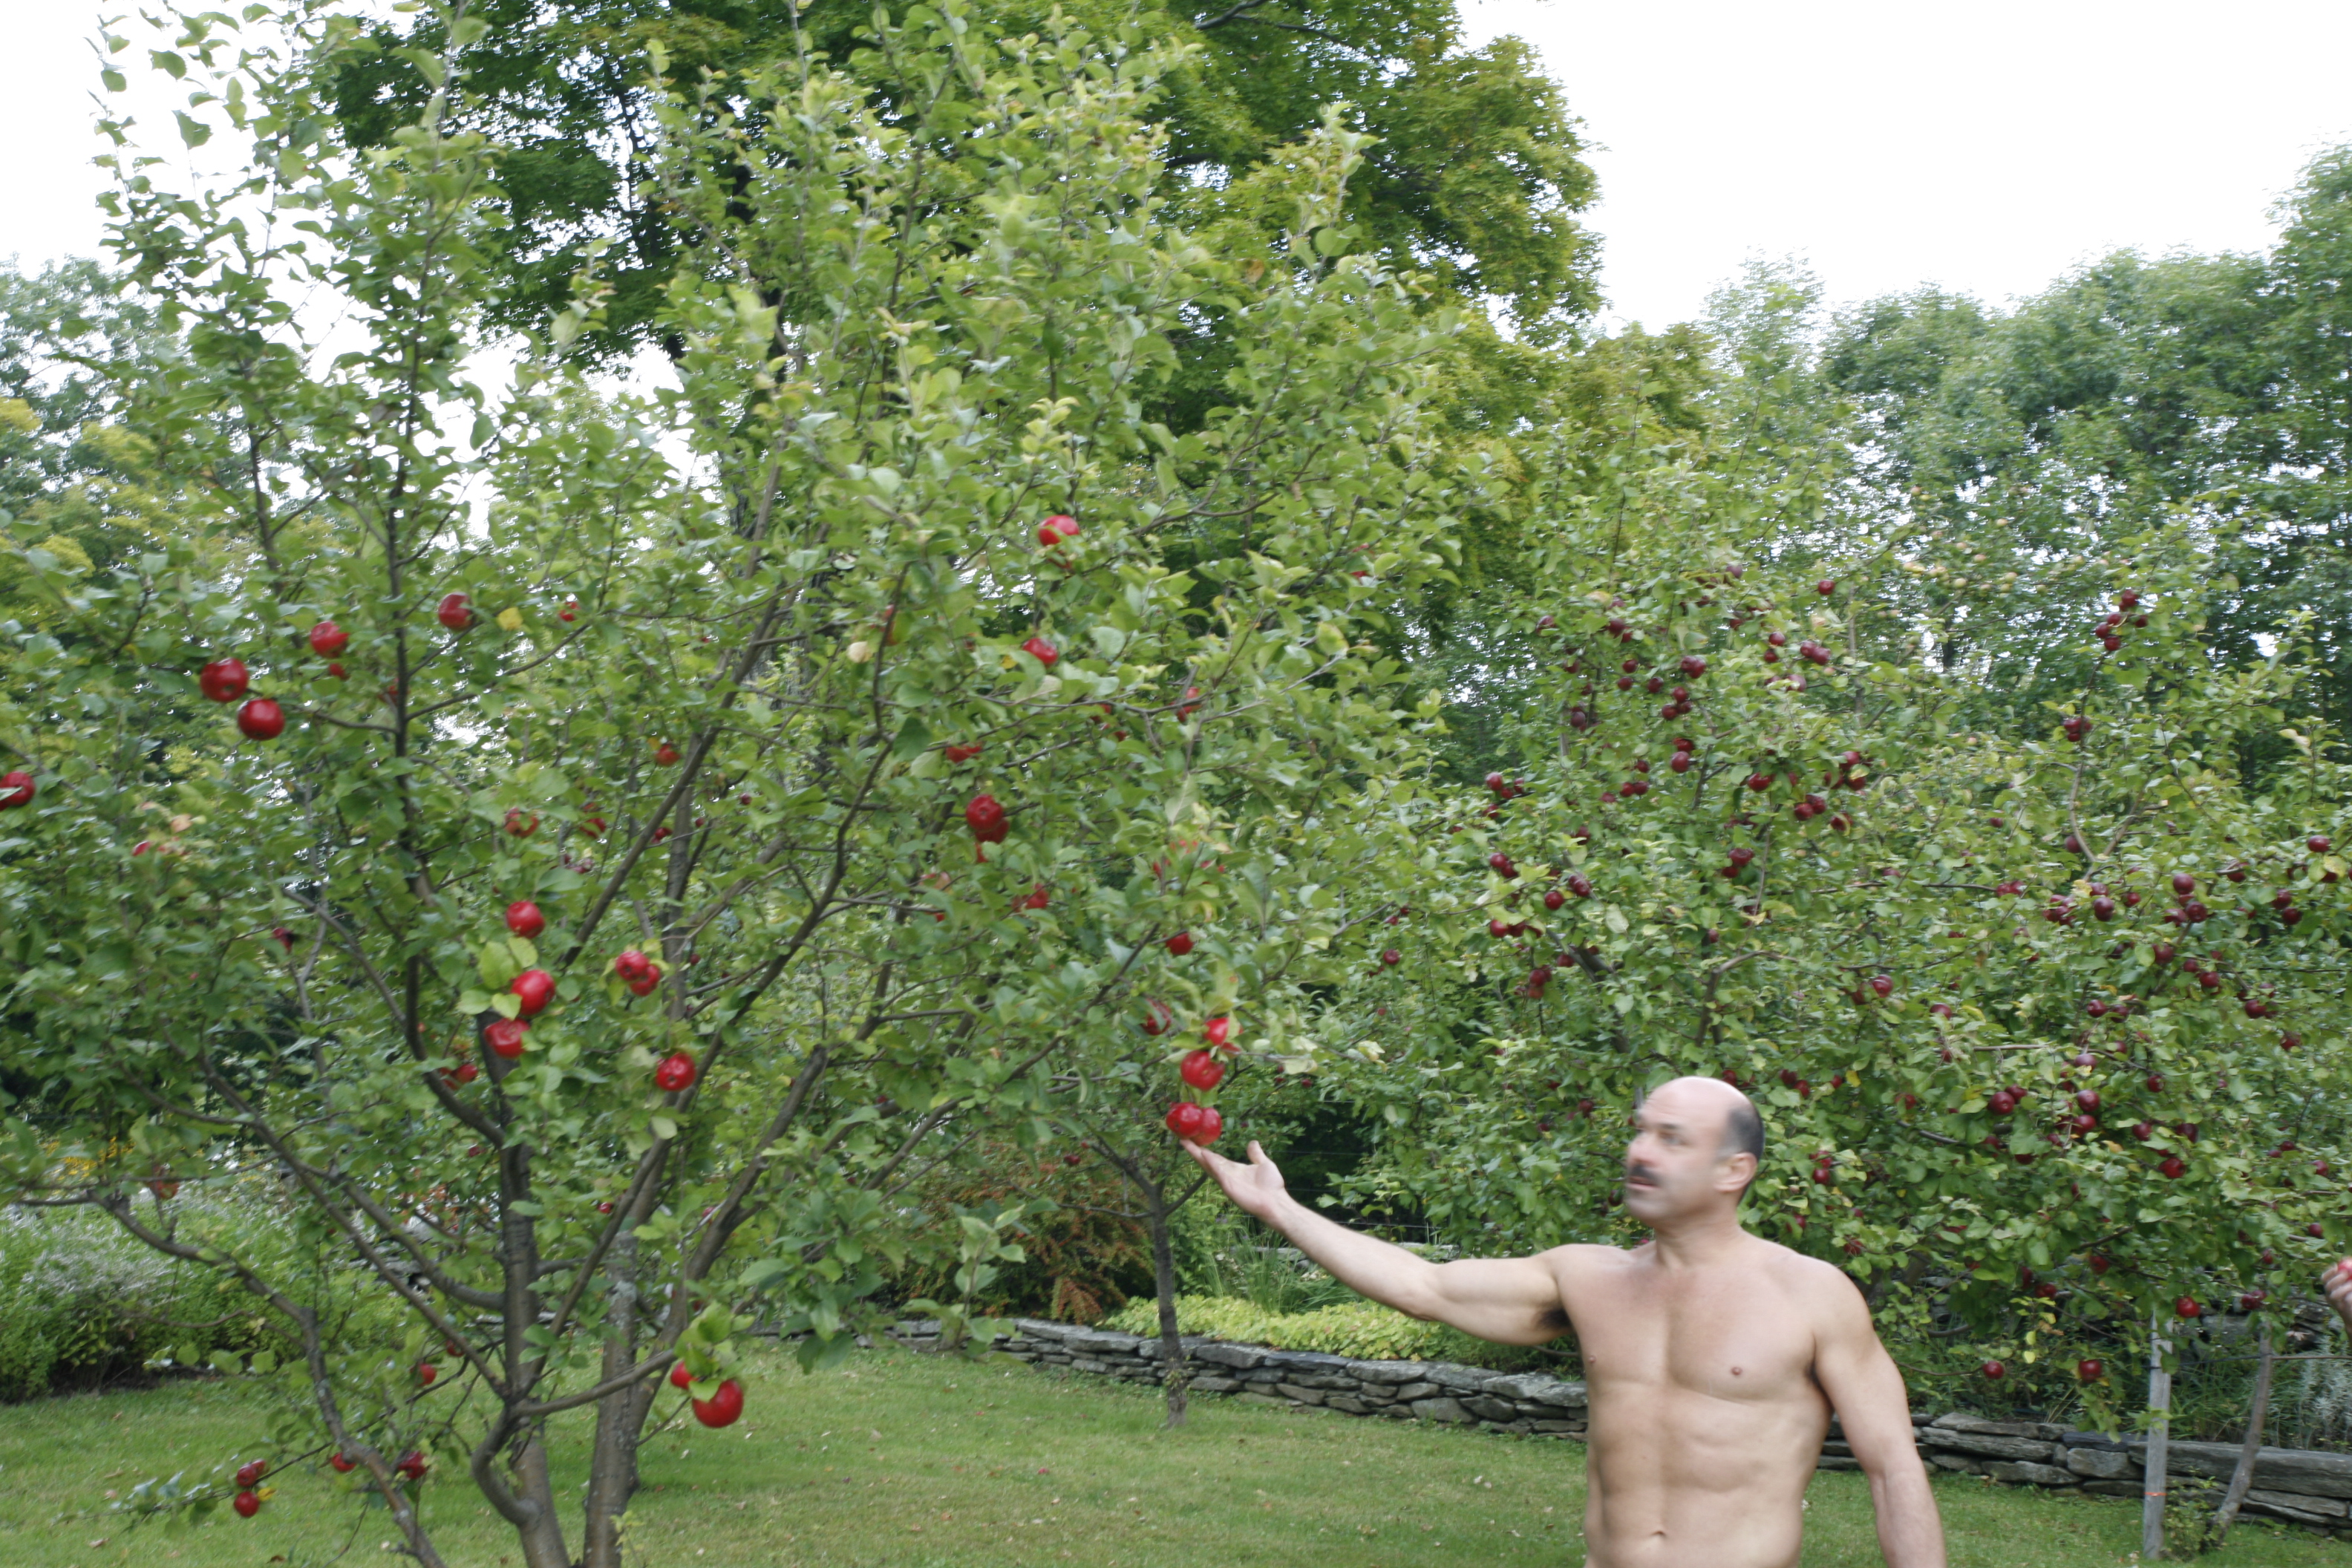 Résultat de recherche d'images pour "tumblr 2 nude gays at an apple orchard"